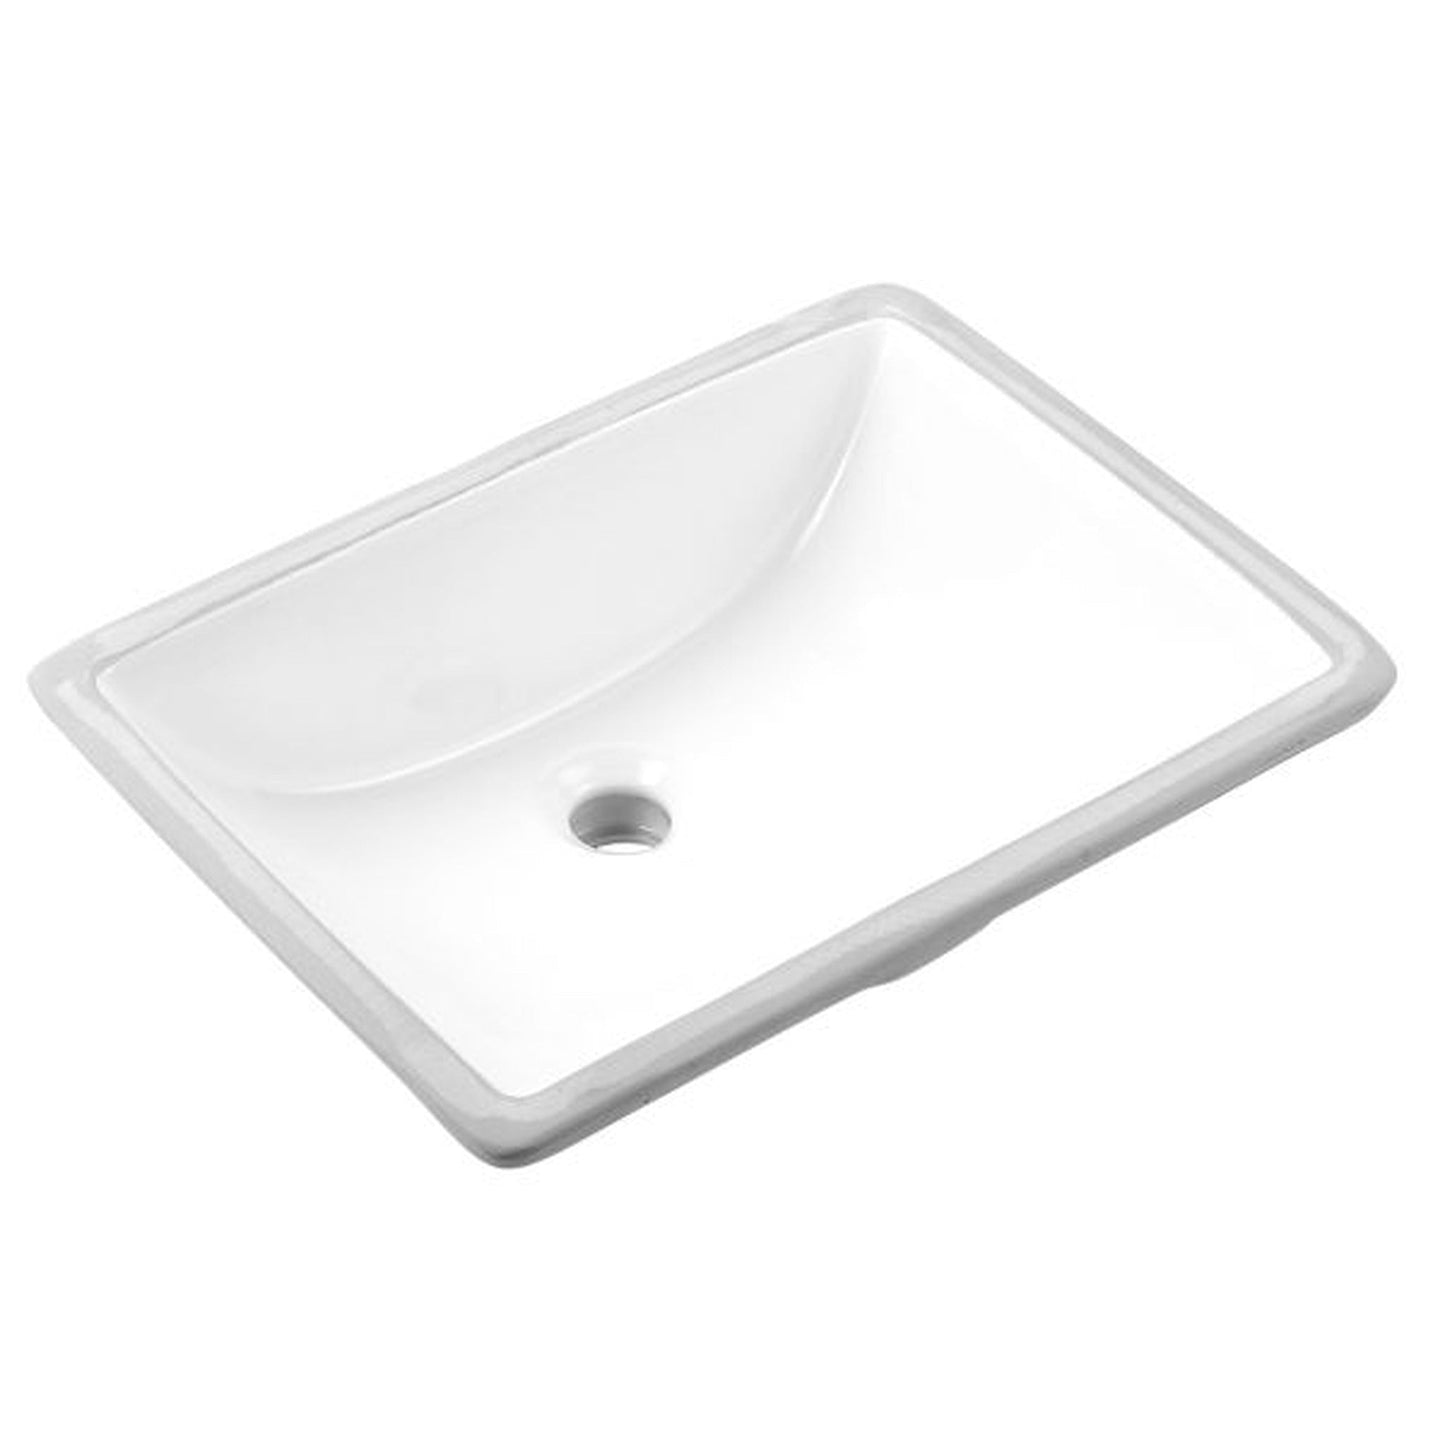 Ratel 50" x 23" White Quartz Vanity Top With Single Undermount Sink